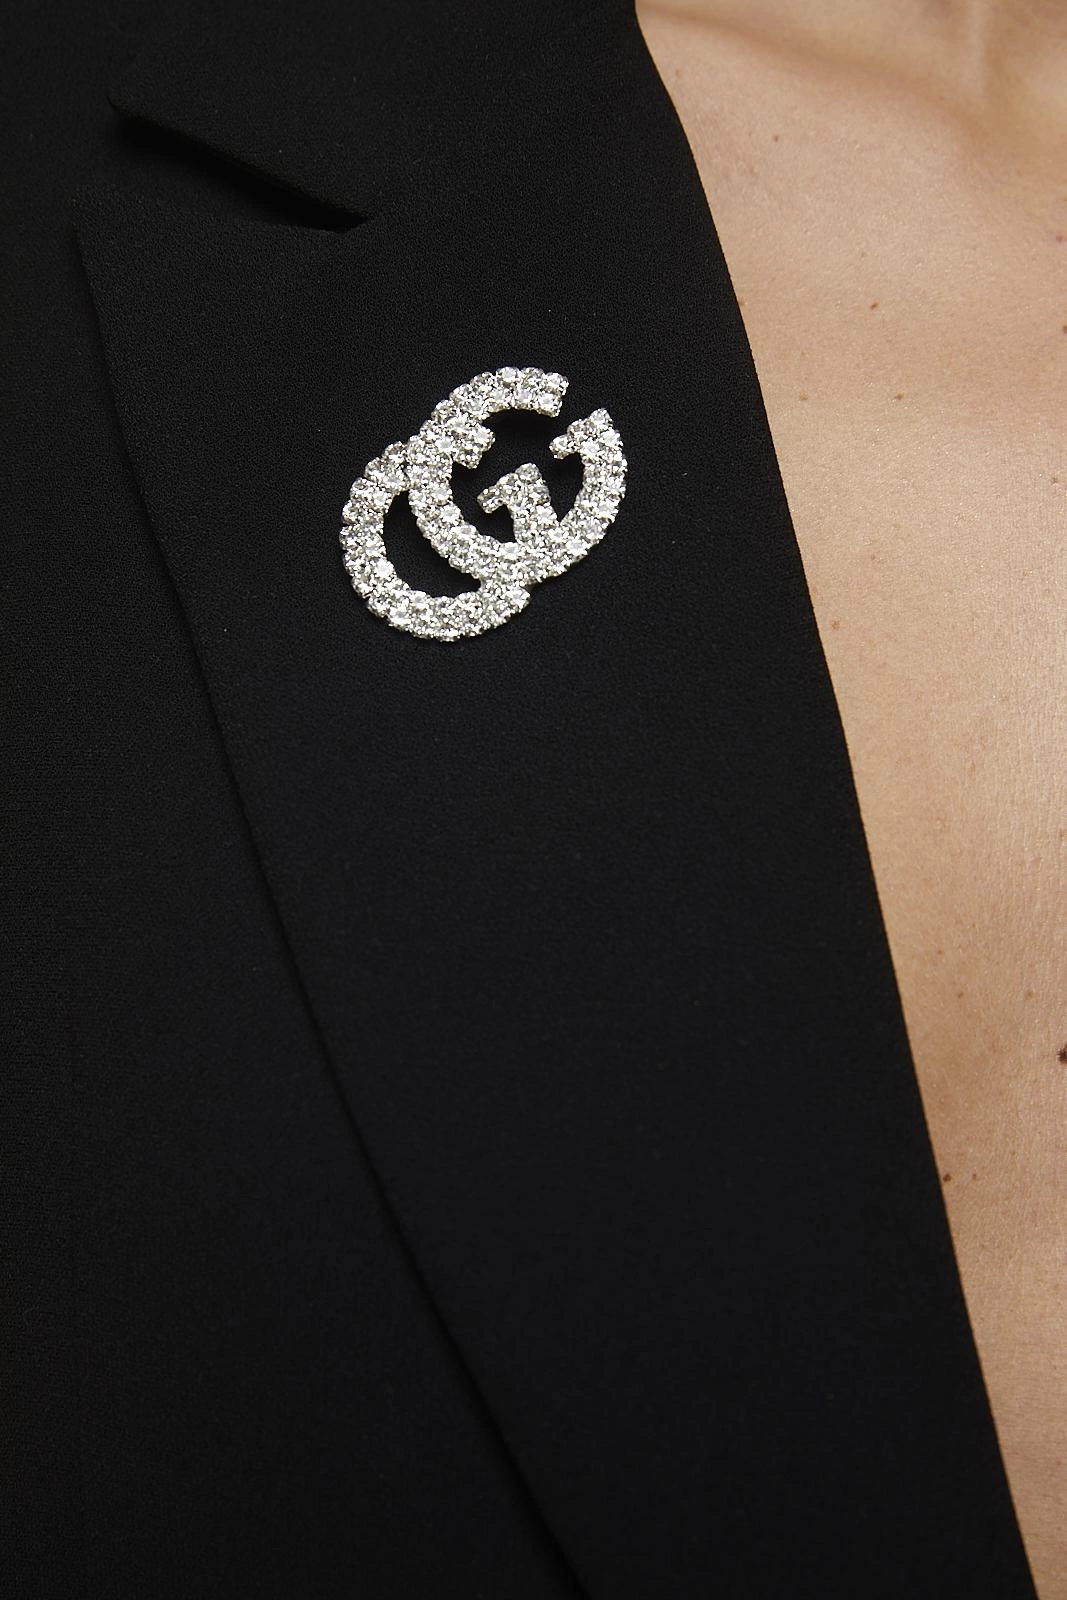 Kadın GG Harf GC Marka Model Gümüş Kaplama Kristal Zirkon Taşlı Zarif Yaka İğnesi Broş